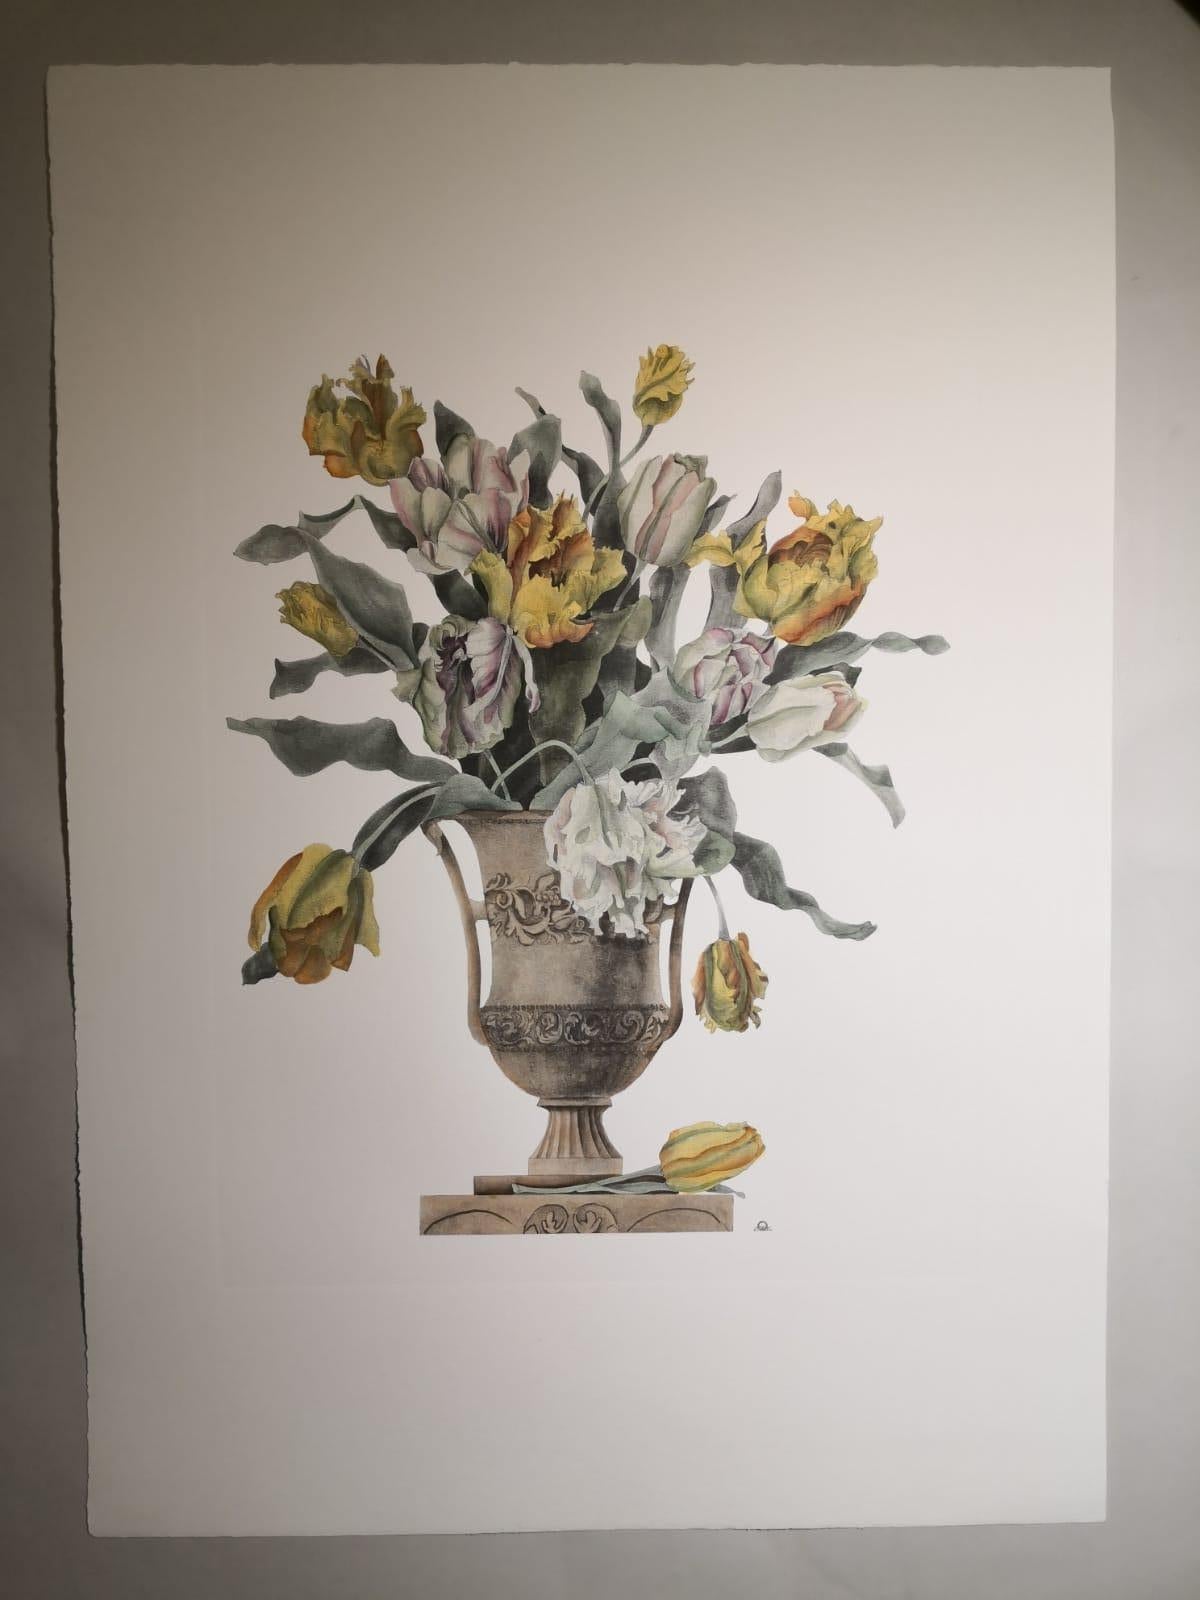 Imprimé élégant et raffiné représentant un vase de fleurs et, précisément, un vase de tulipes jaunes et blanches. 
Quatre imprimés de vases différents sont disponibles pour créer une composition colorée.
Tous les tirages sont entièrement colorés à